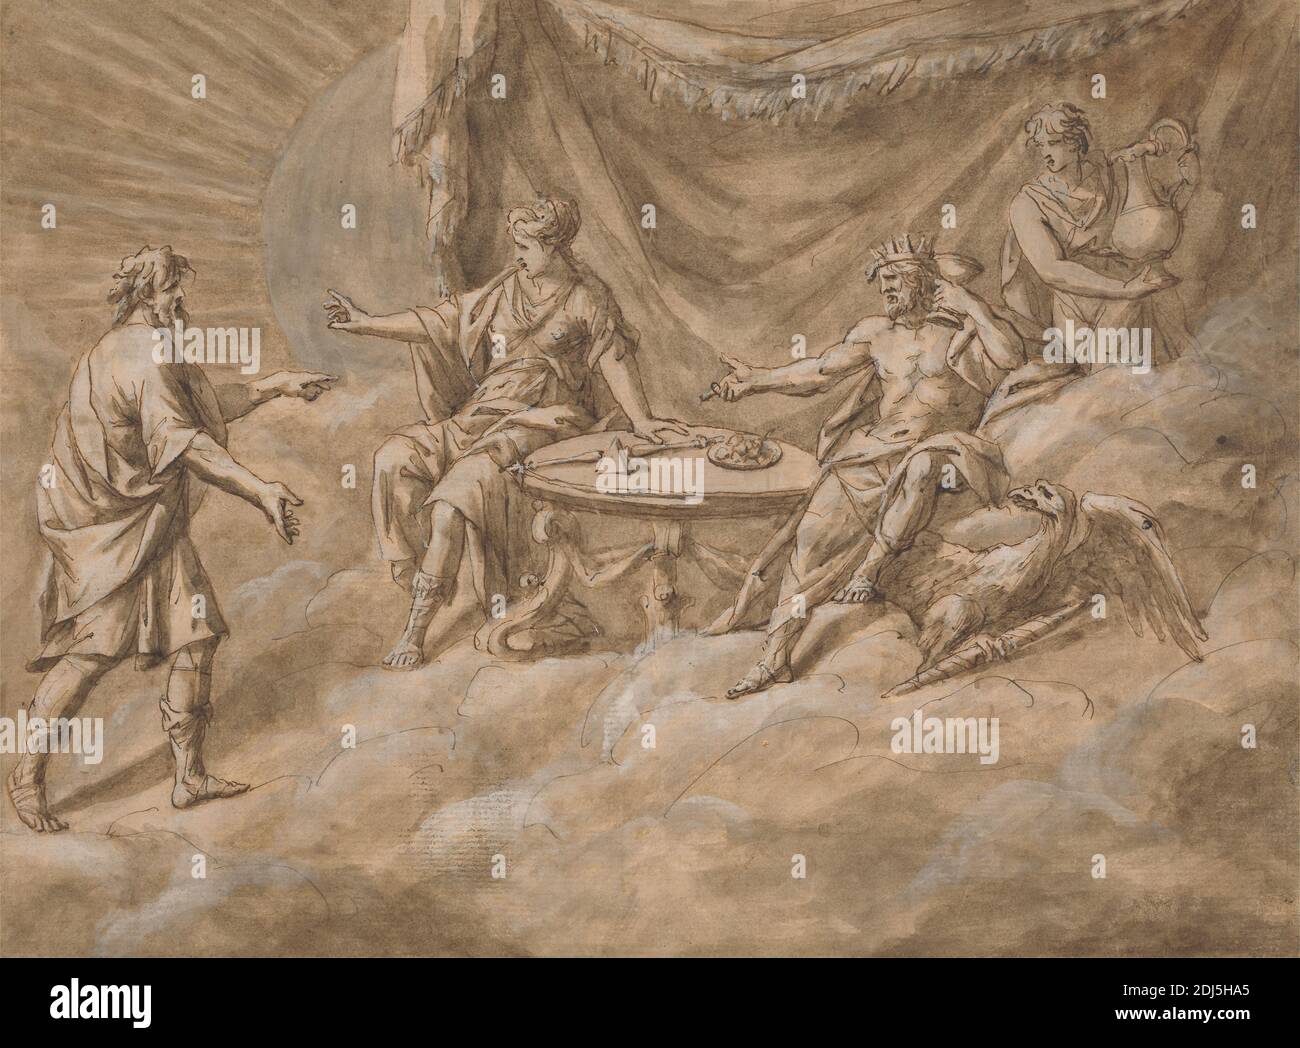 Una escena en el Monte Olimpo, John Michael Rysbrack, 1694–1770, flamenco, activo en Gran Bretaña (desde 1720), sin fecha, tinta pluma y marrón, lavado marrón, y gouache blanco en medio, ligeramente texturado, papel de color crema, Hoja: 8 1/4 x 11 1/4pulg. (21 x 28,6 cm), Hoja: 8 3/8 × 11 1/4 pulgadas (21.3 × 28.6 cm), y Monte: 10 5/8 × 13 1/2 pulgadas (27 × 34.3 cm), atributos de Júpiter: thunderbolt, nubes, cortina, águila, alpinera, goblet, diosas, dioses, cielo, rey (persona), Olimpo, plato, prisma, reina (persona), sujeto religioso y mitológico, siervo, lanza, sol, mesa, hablar Foto de stock